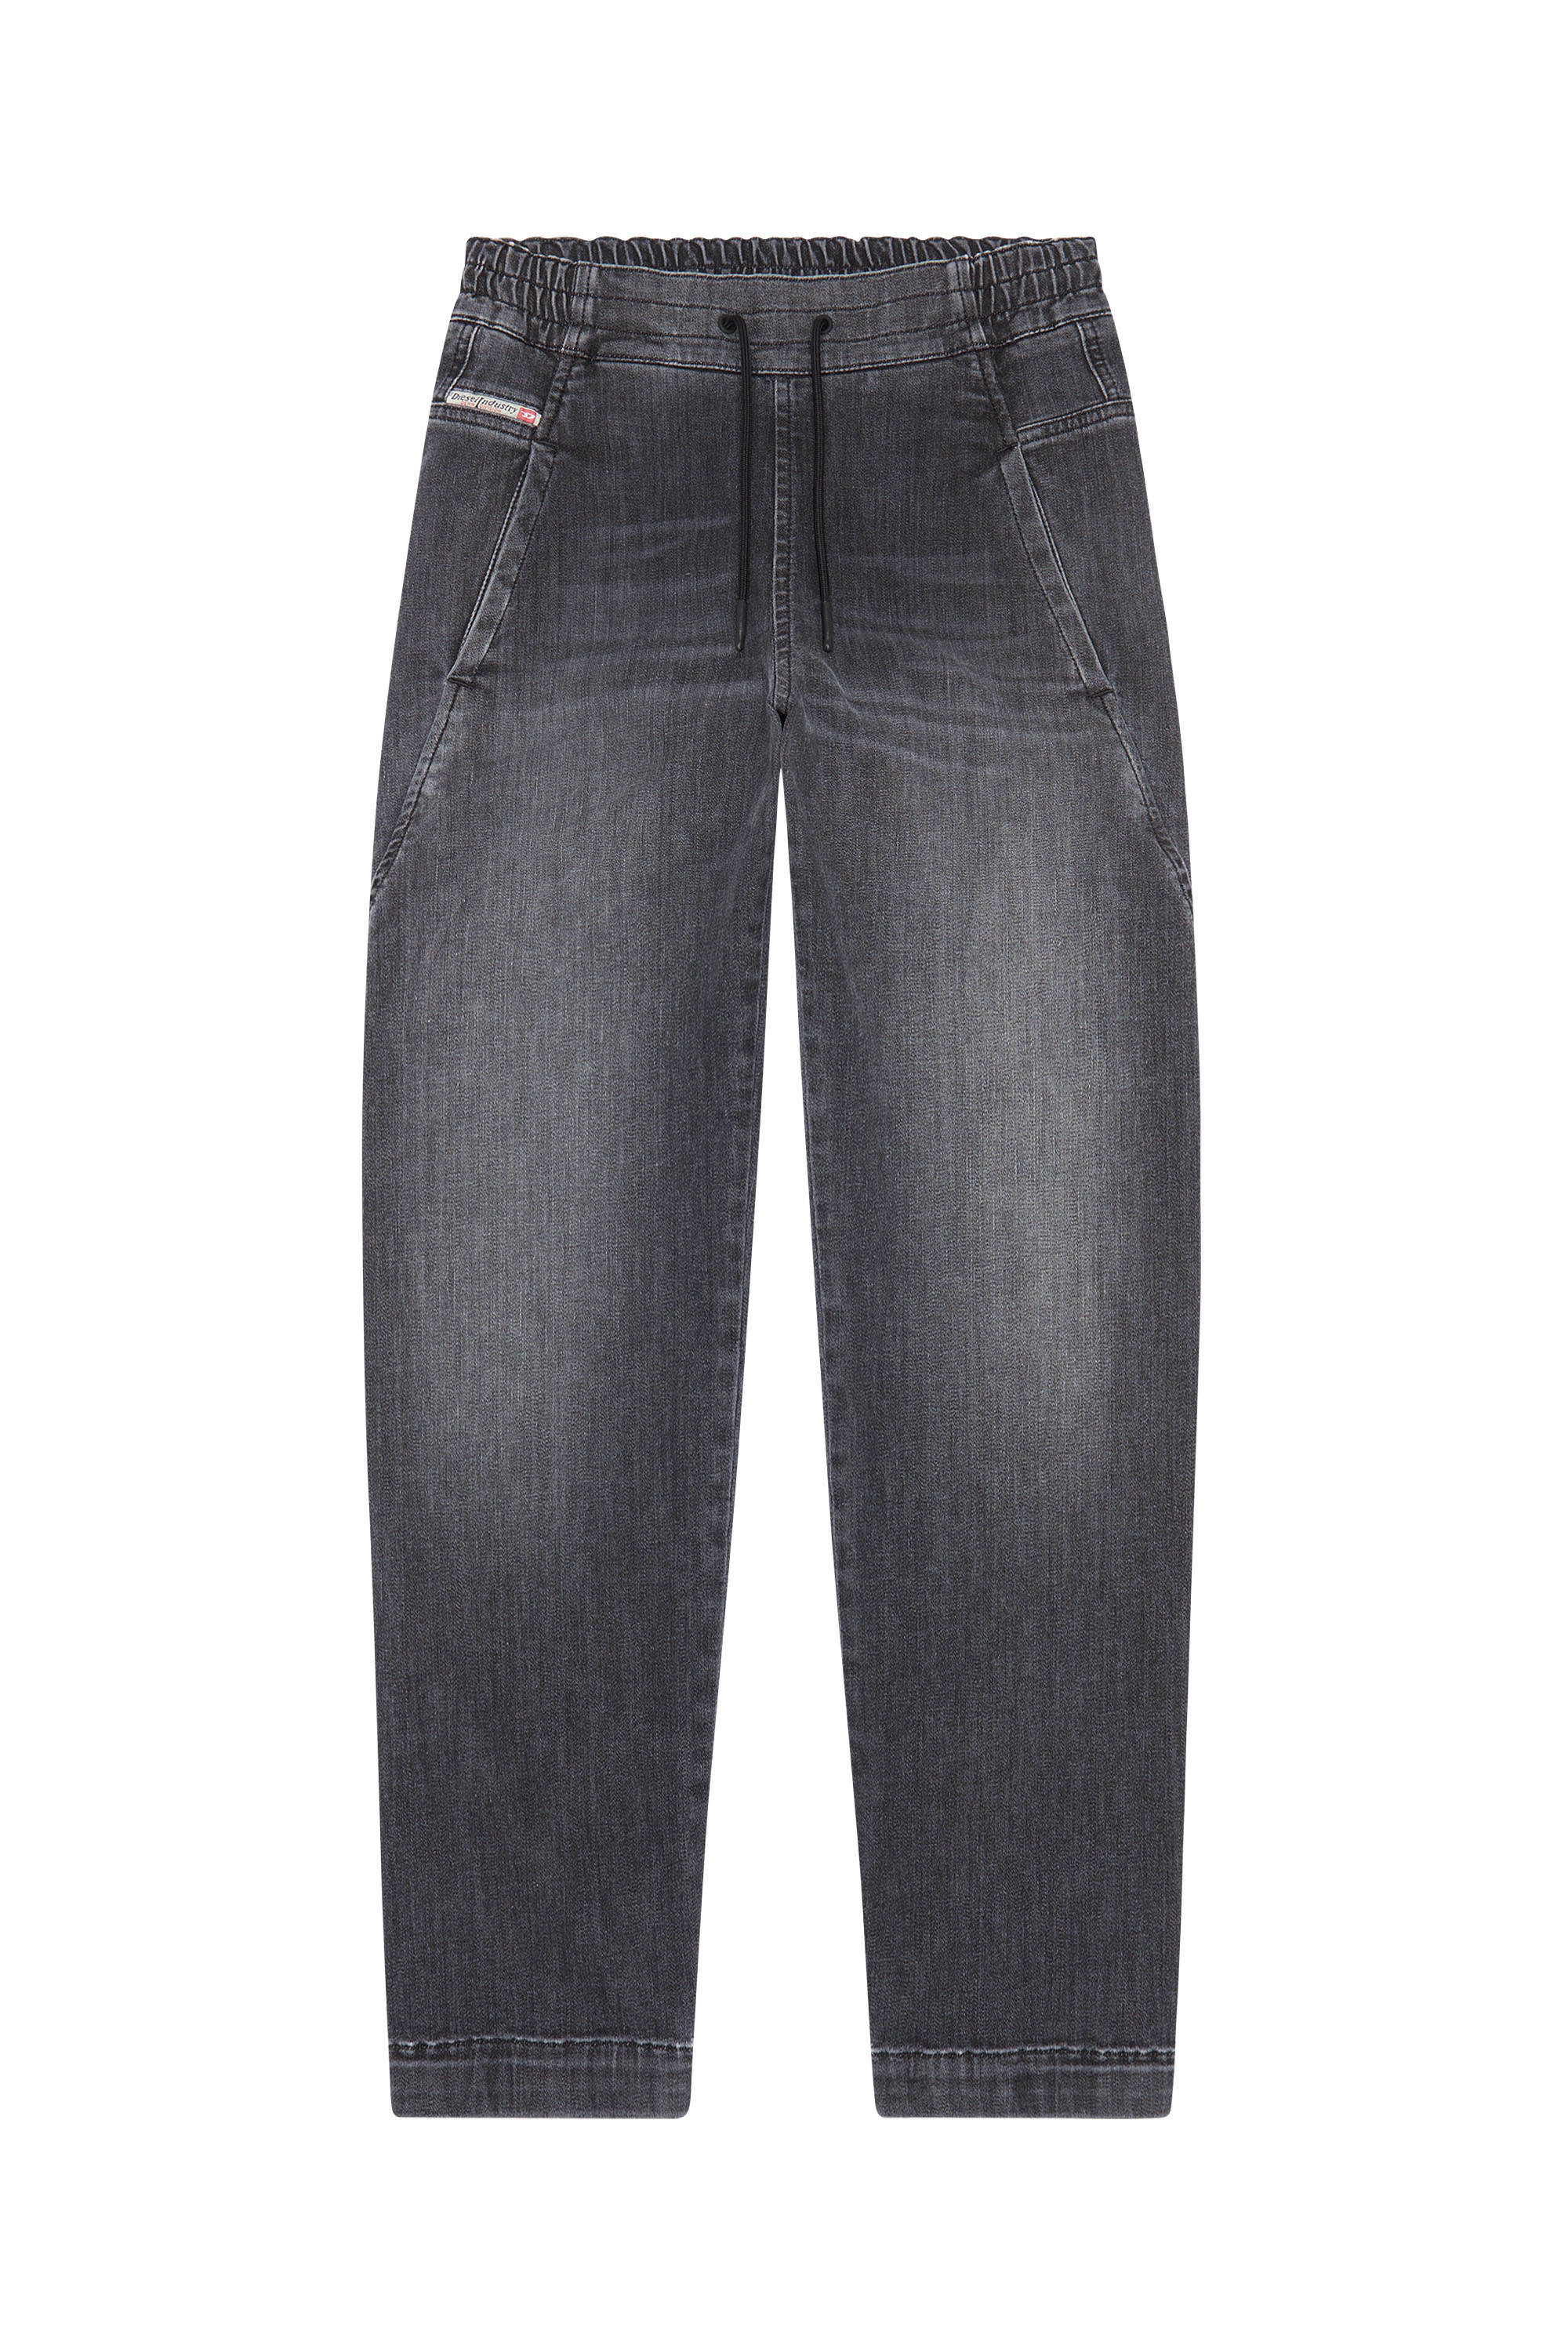 Krailey JoggJeans® 09D52 Boyfriend, Schwarz/Dunkelgrau - Jeans